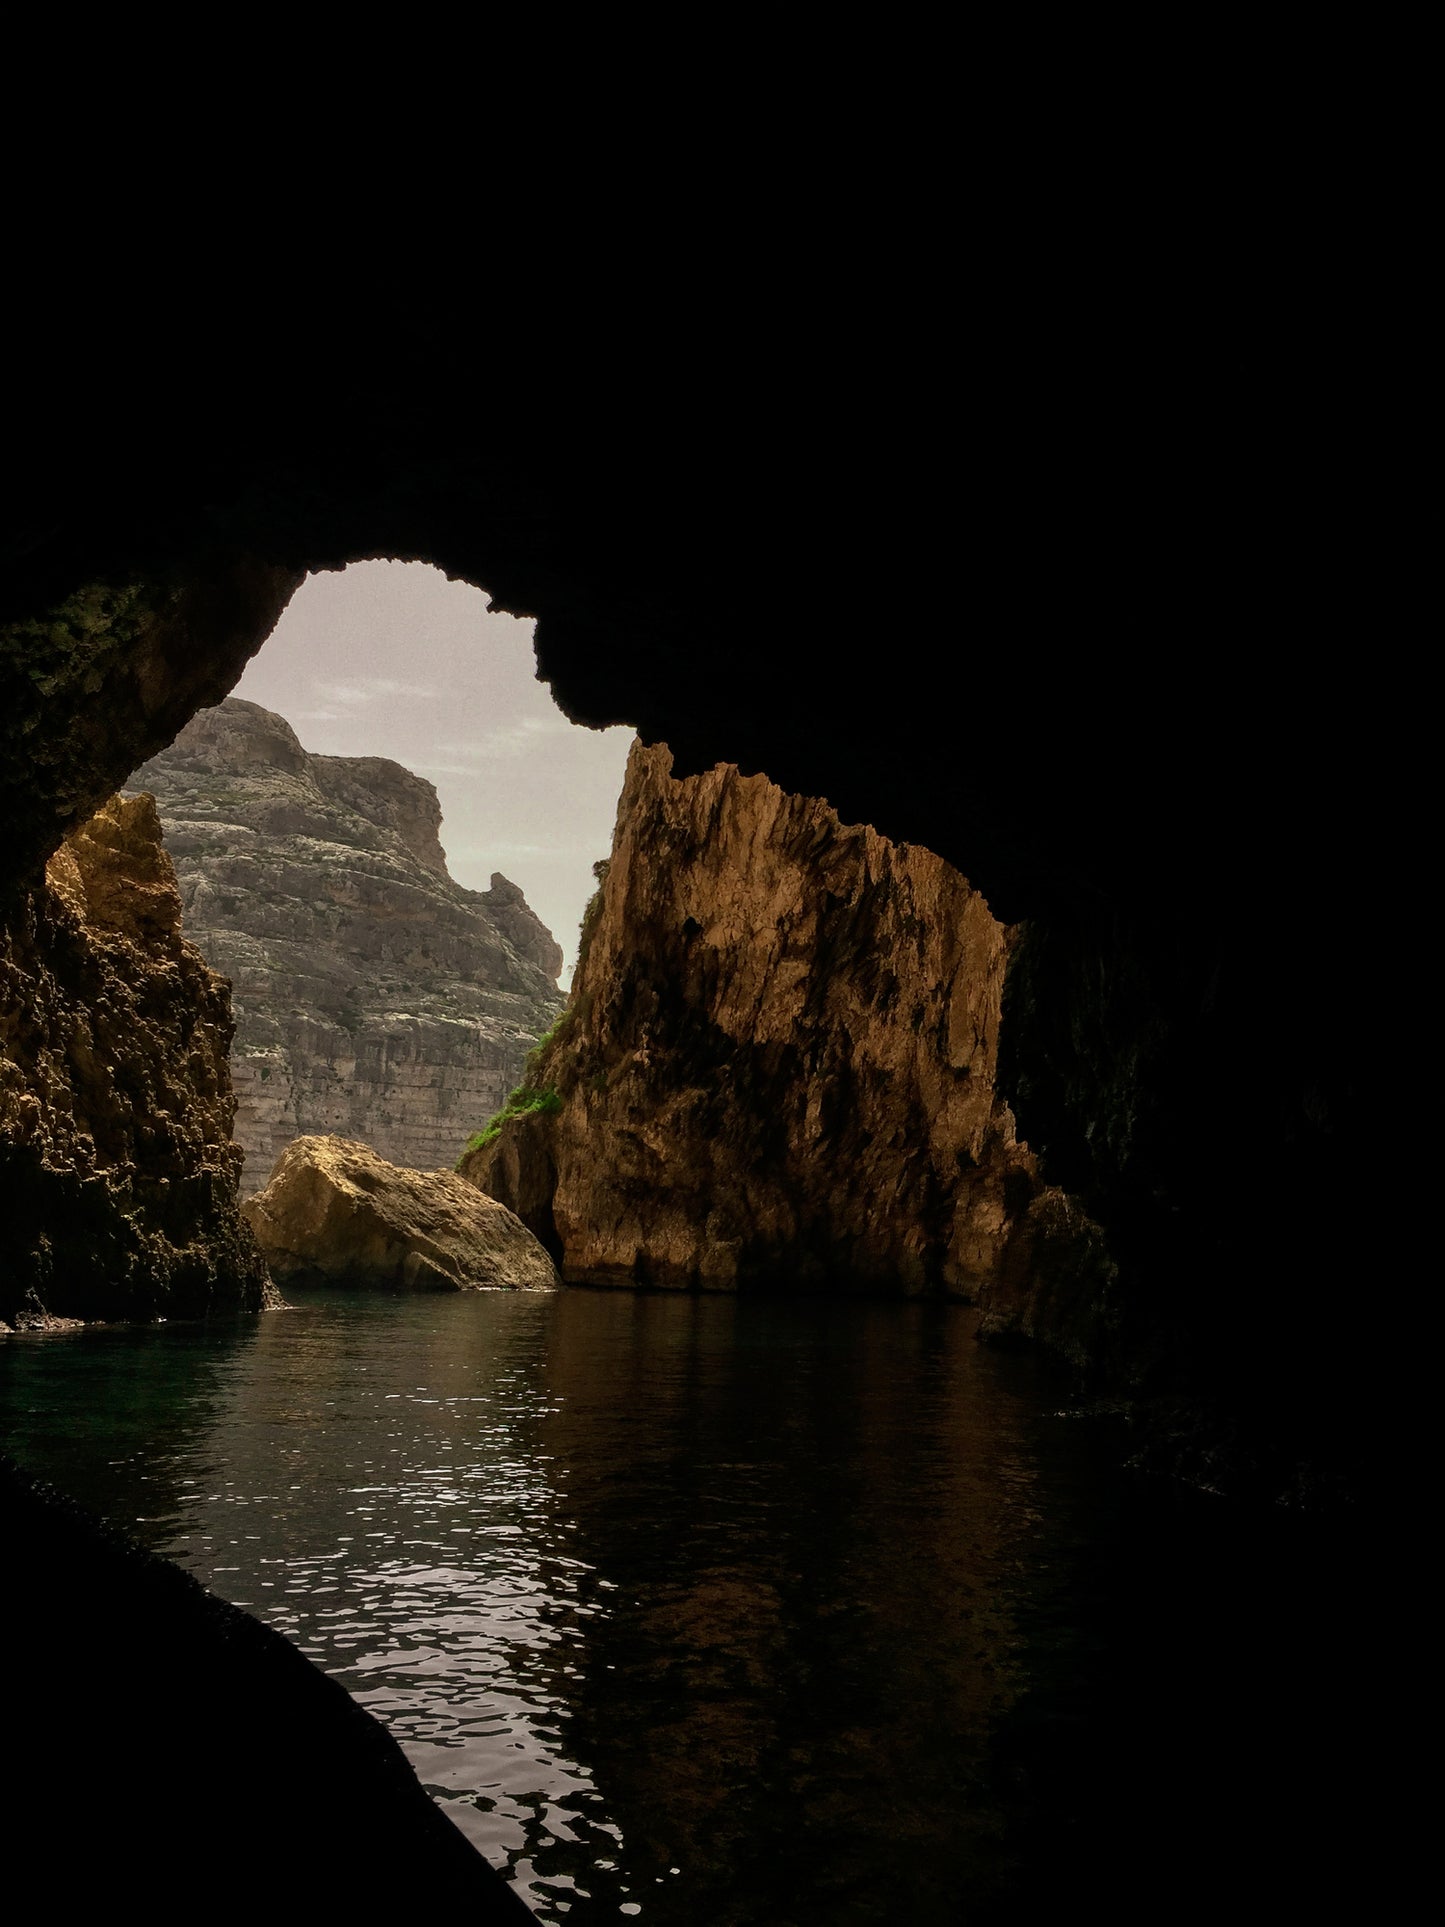 Malta Caves No. 1